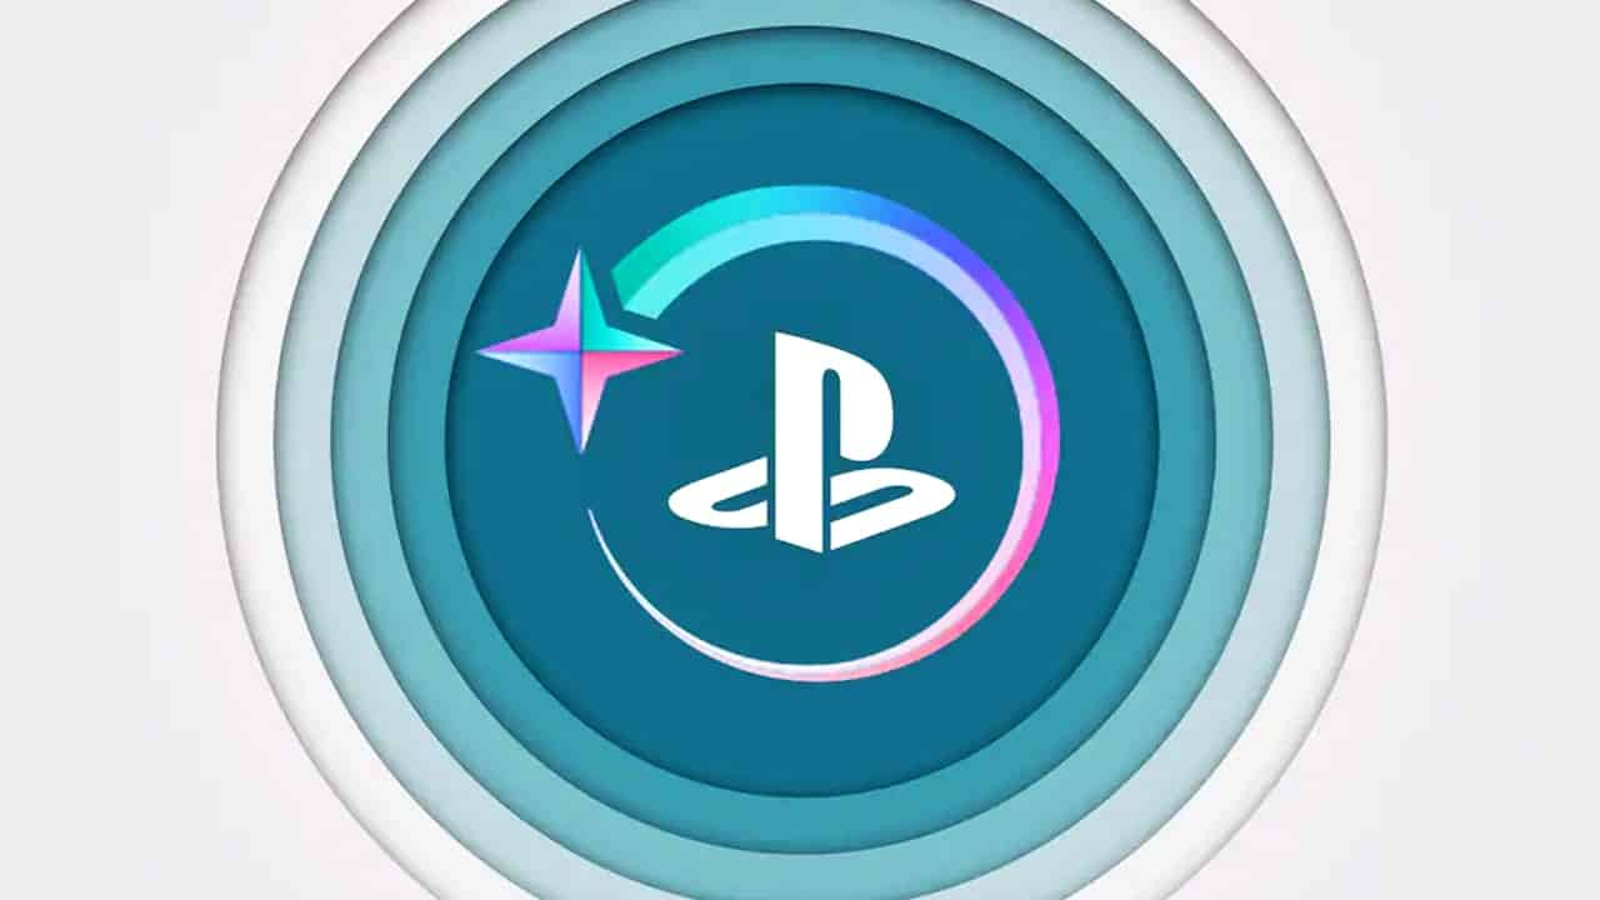 PlayStation Stars recebe novos colecionáveis em novembro